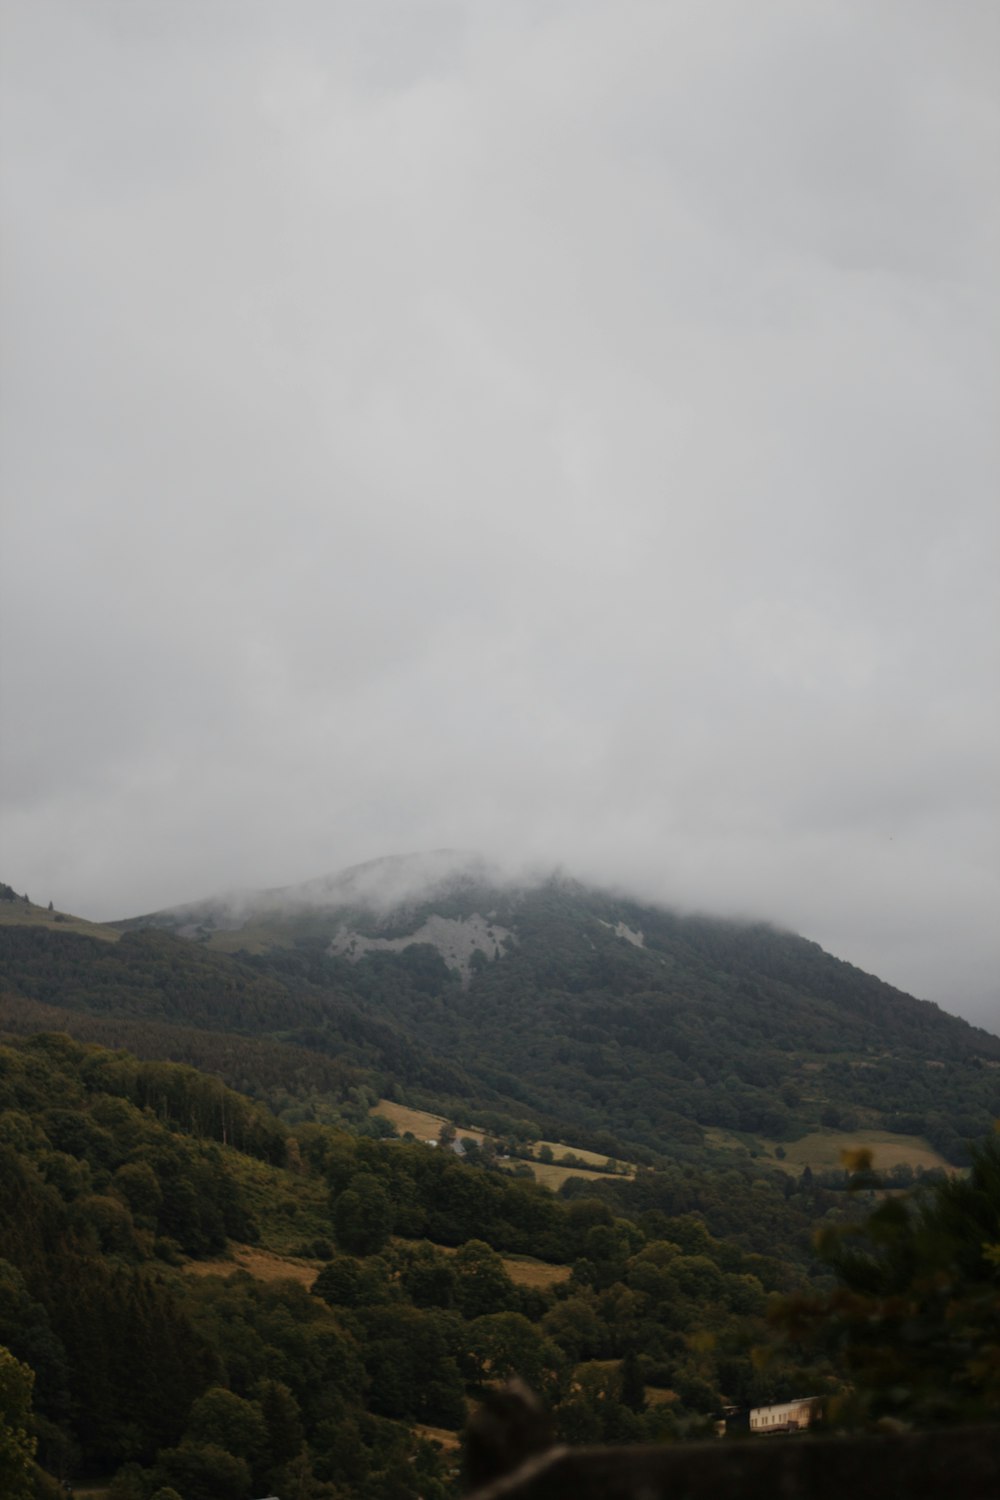 montañas verdes y marrones bajo nubes blancas durante el día